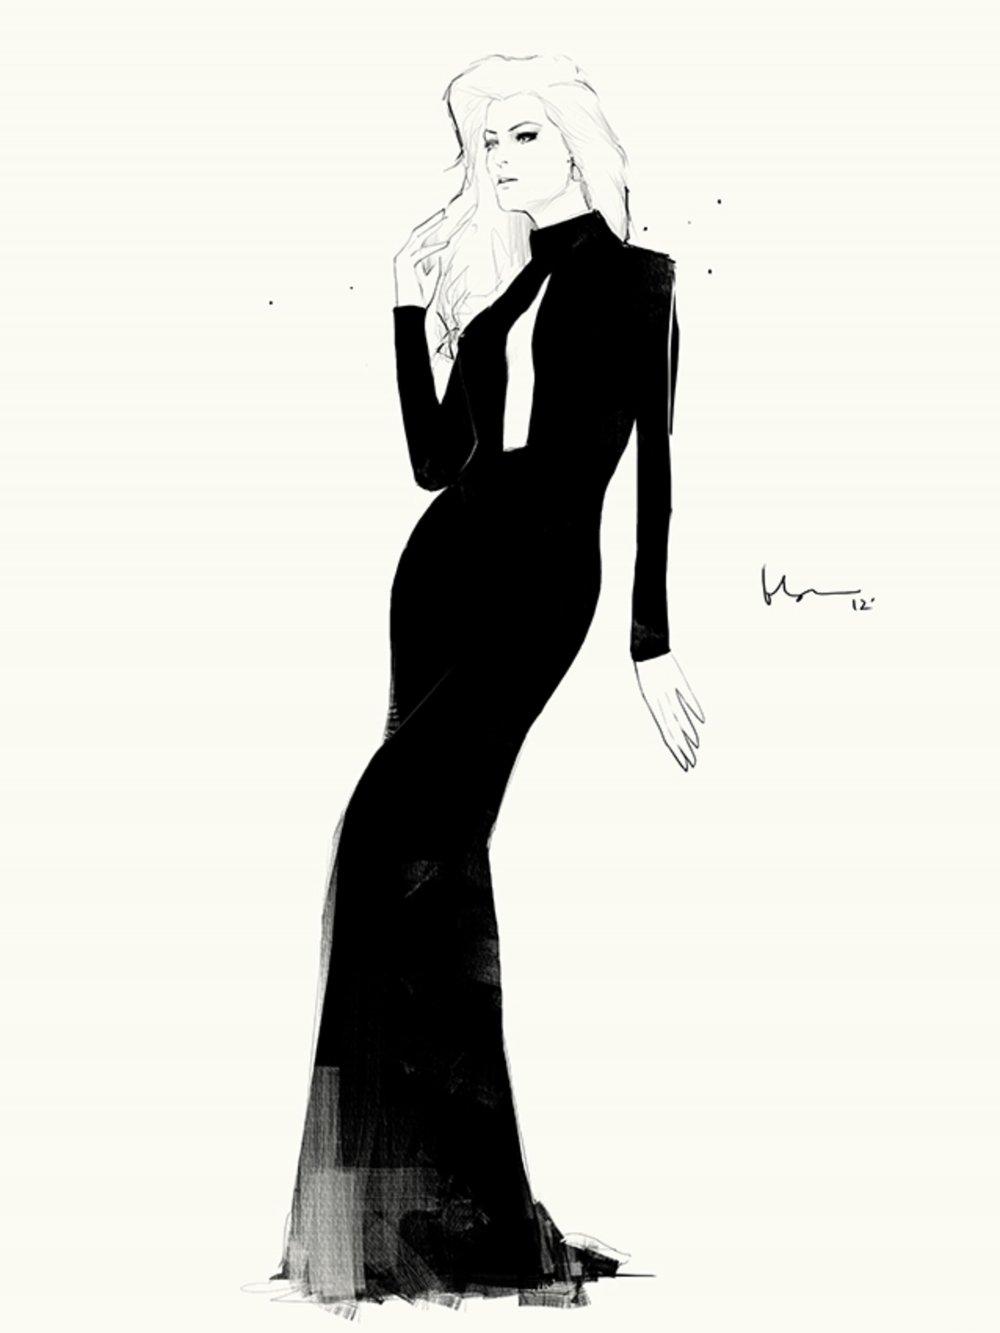 Девушка в черном длинном платье